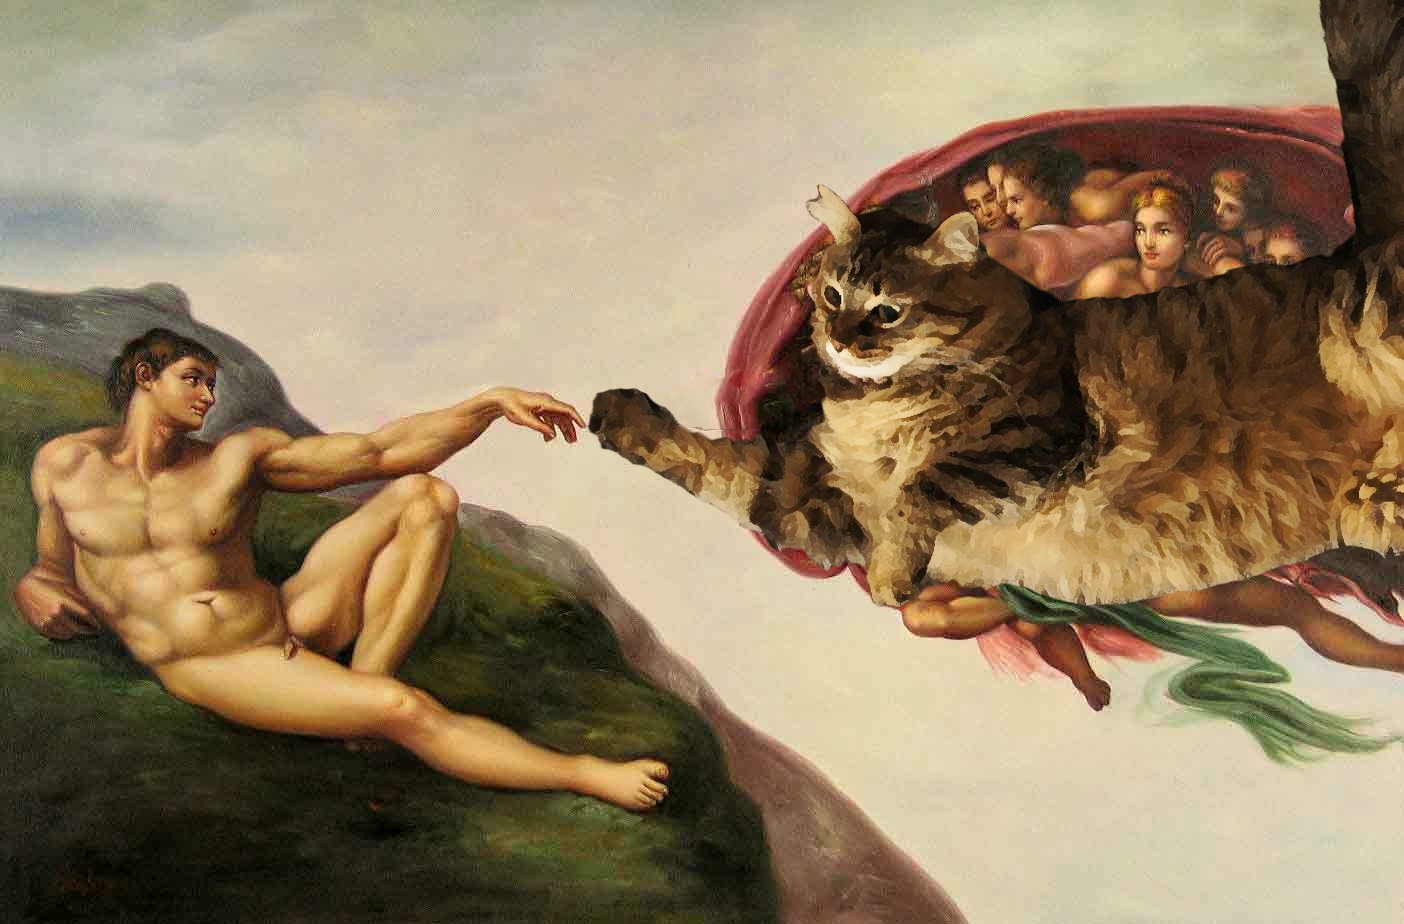 Il gatto divenne un dio